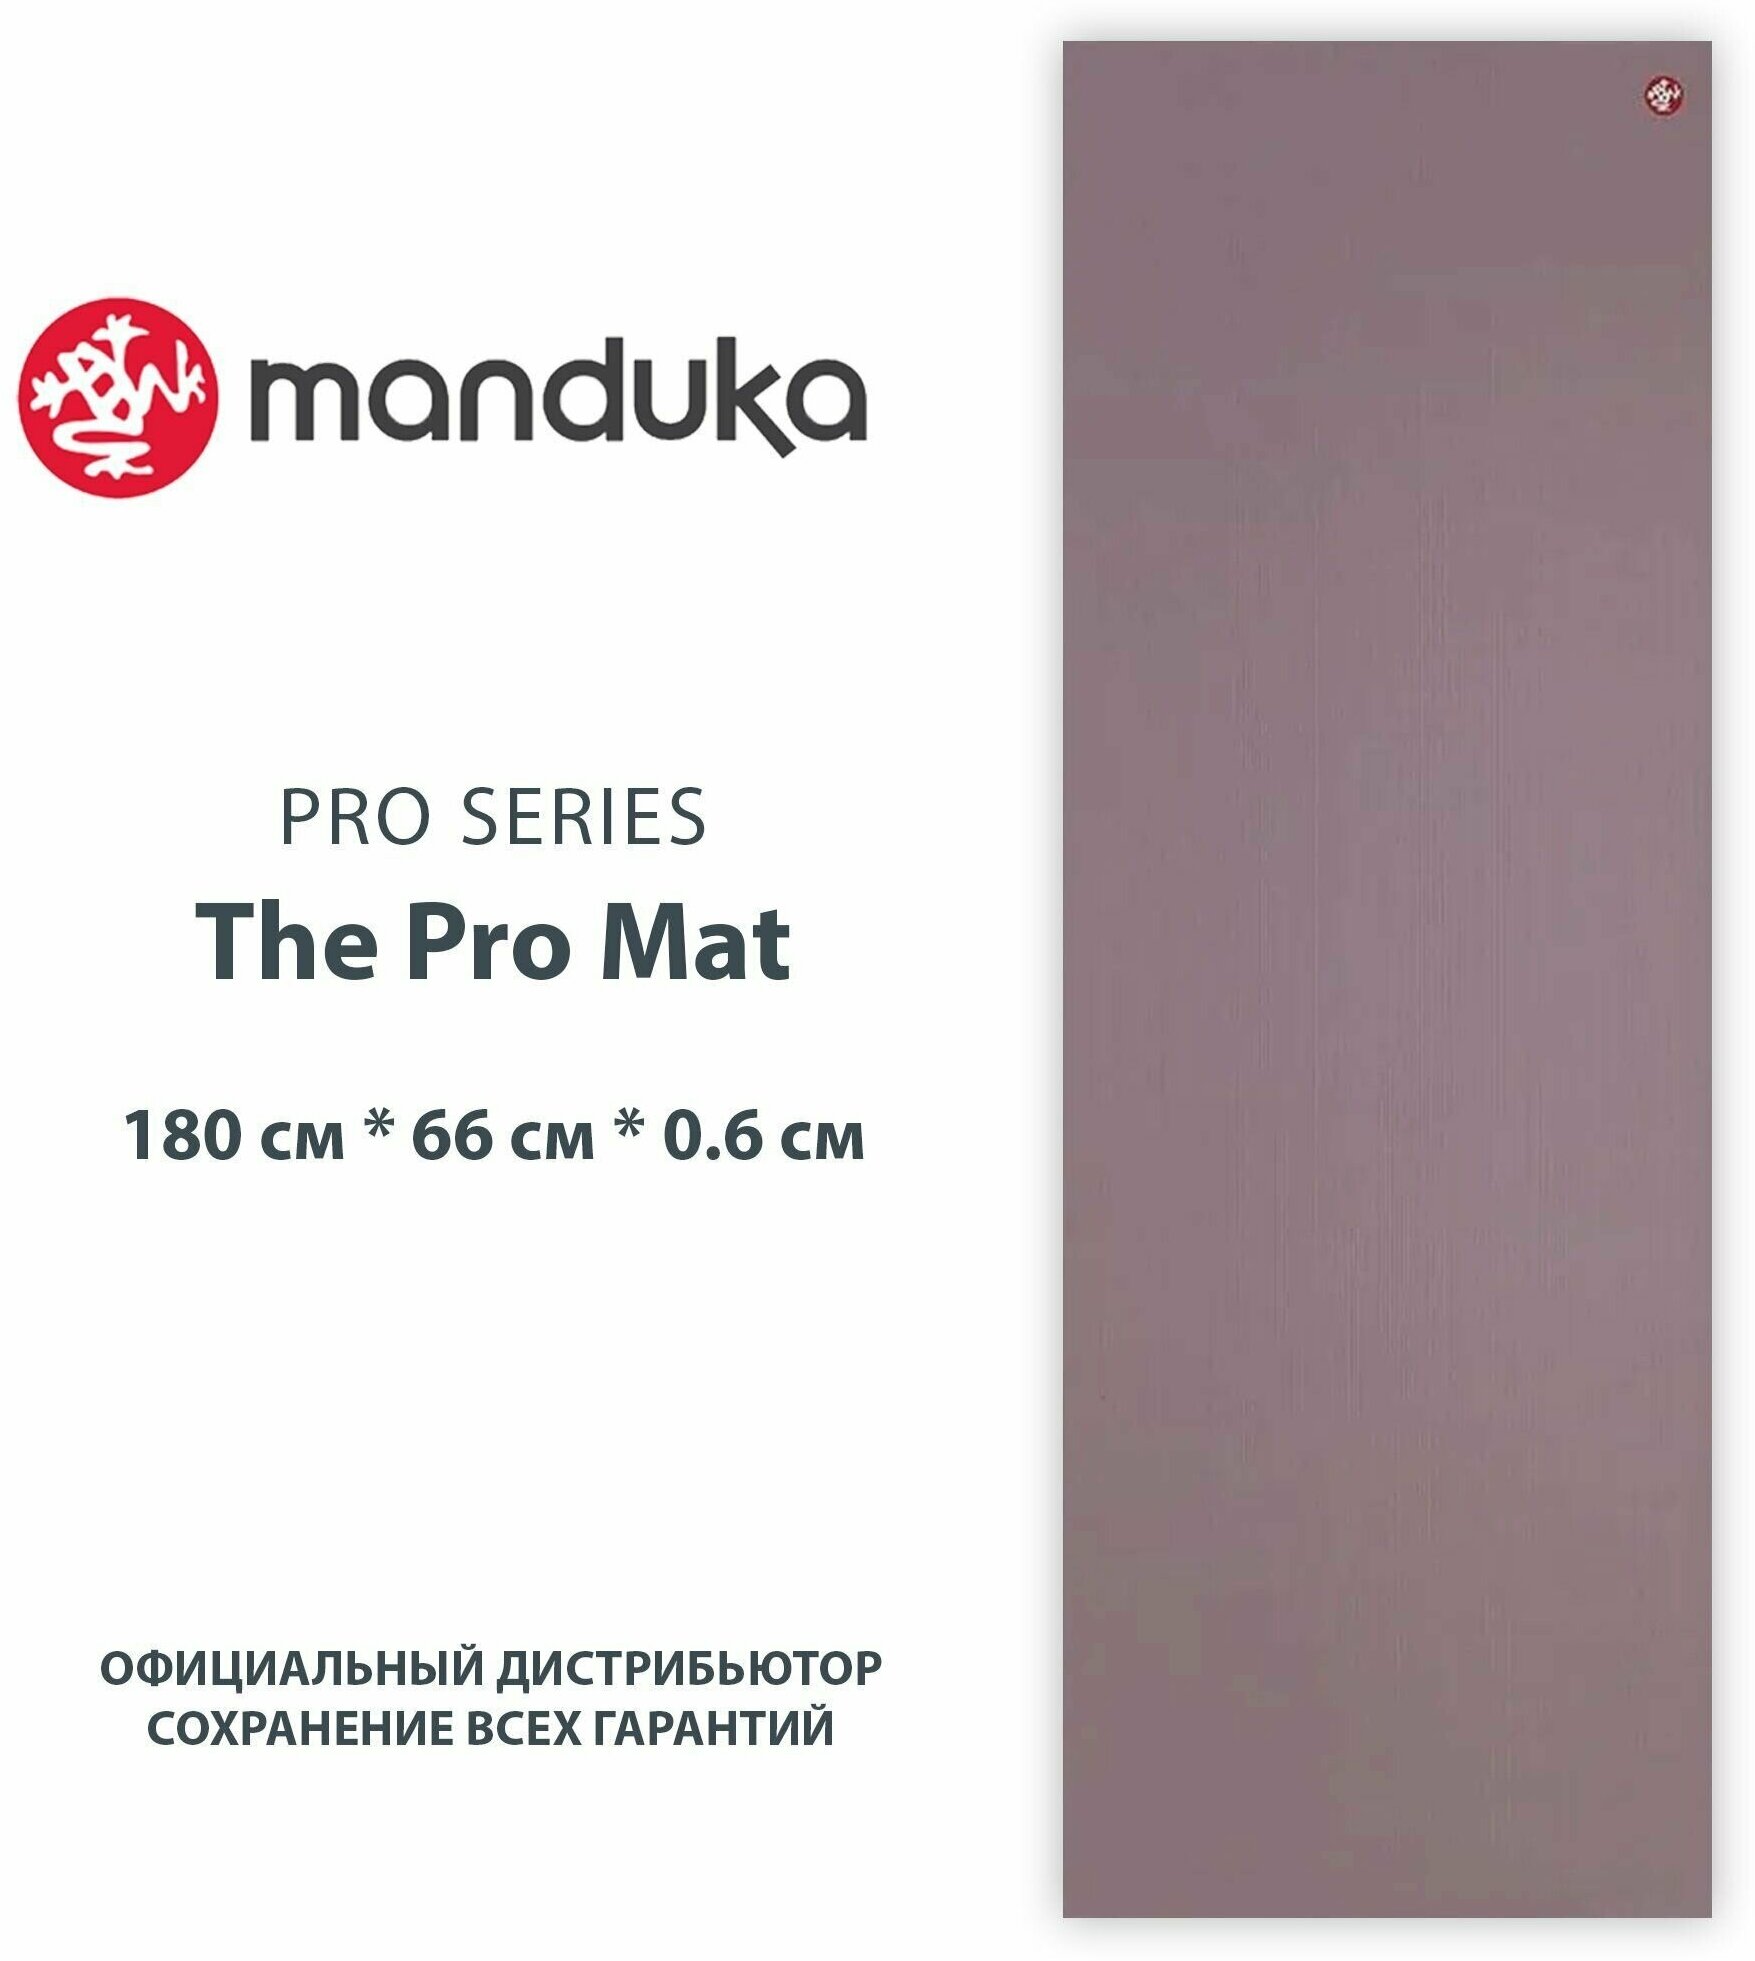 Коврик для йоги из ПВХ Manduka The PRO Mat 180*66*0,6 см - Elderberry